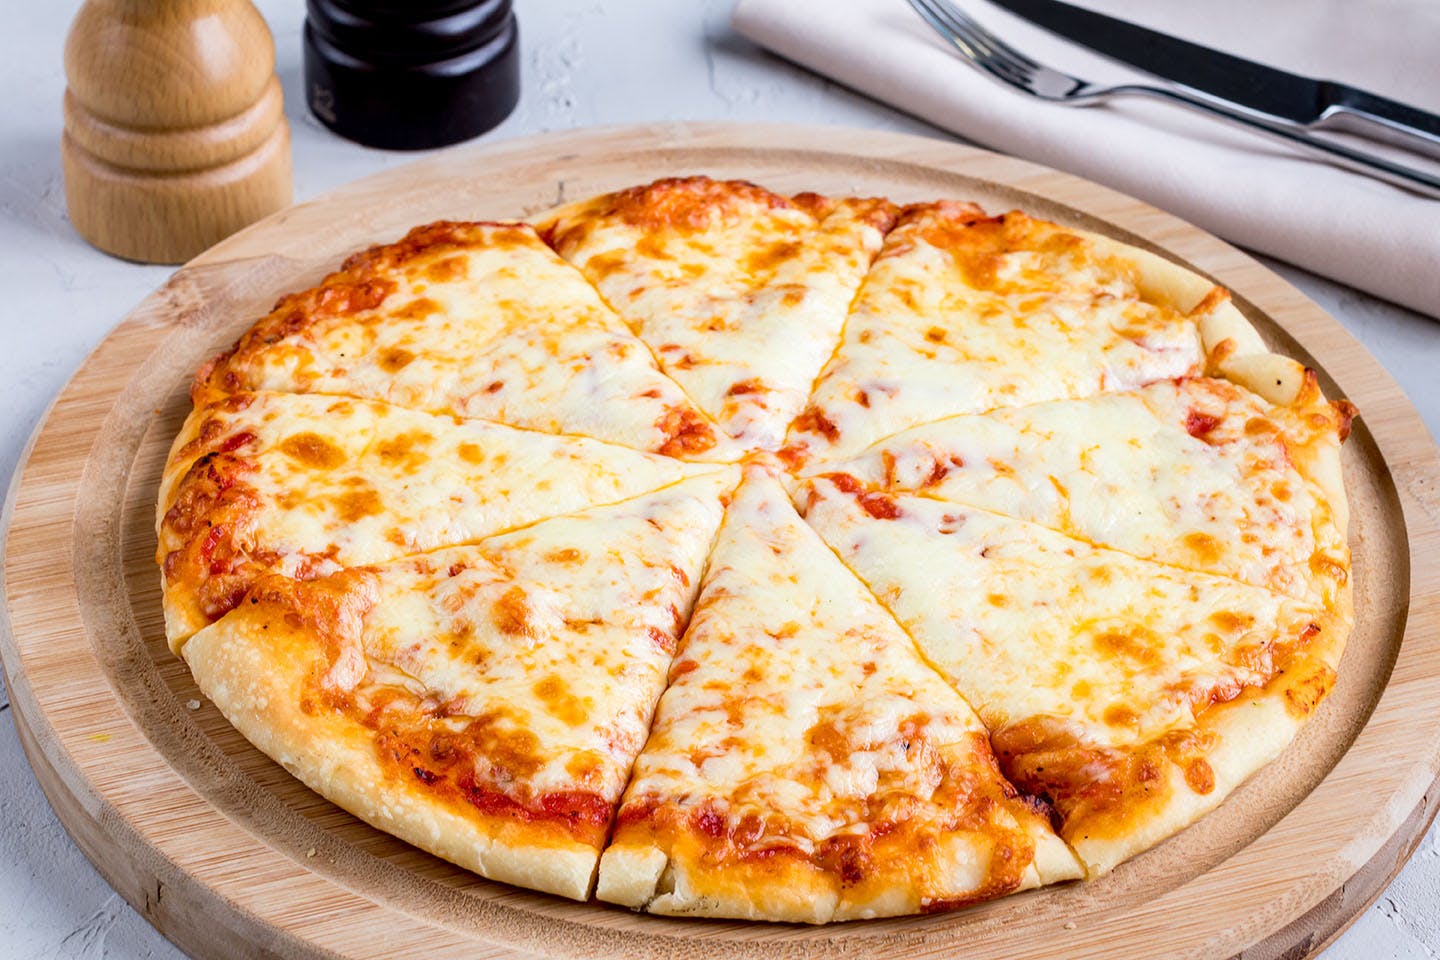  Pizza mit Käse und Tomaten